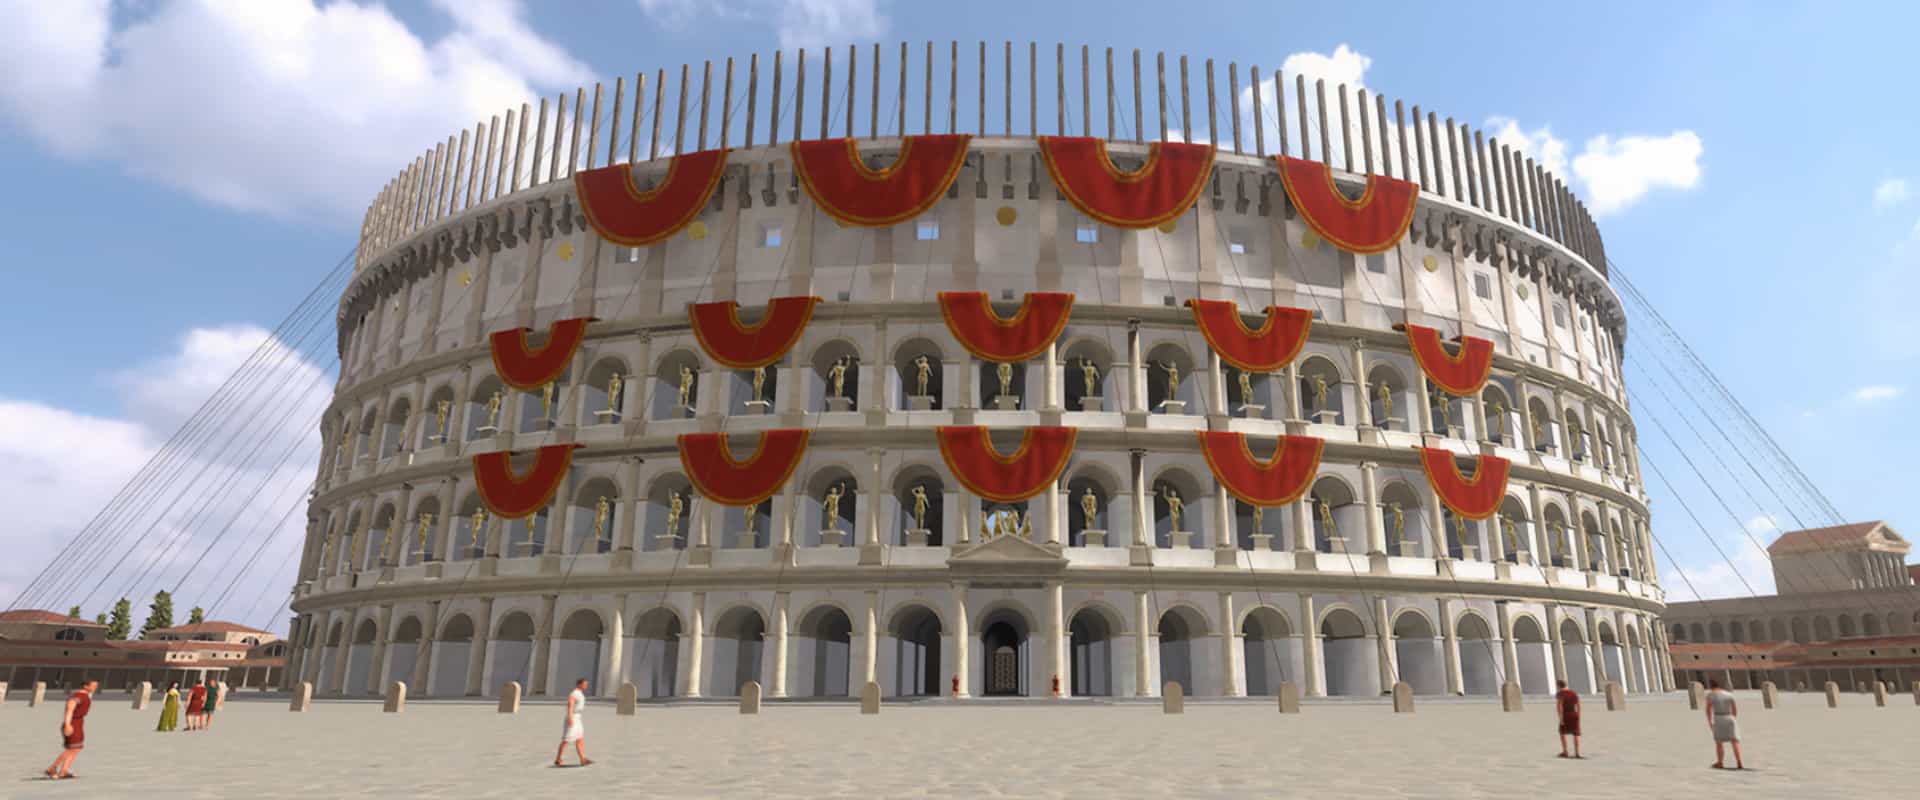 ancient rome colosseum virtual tour